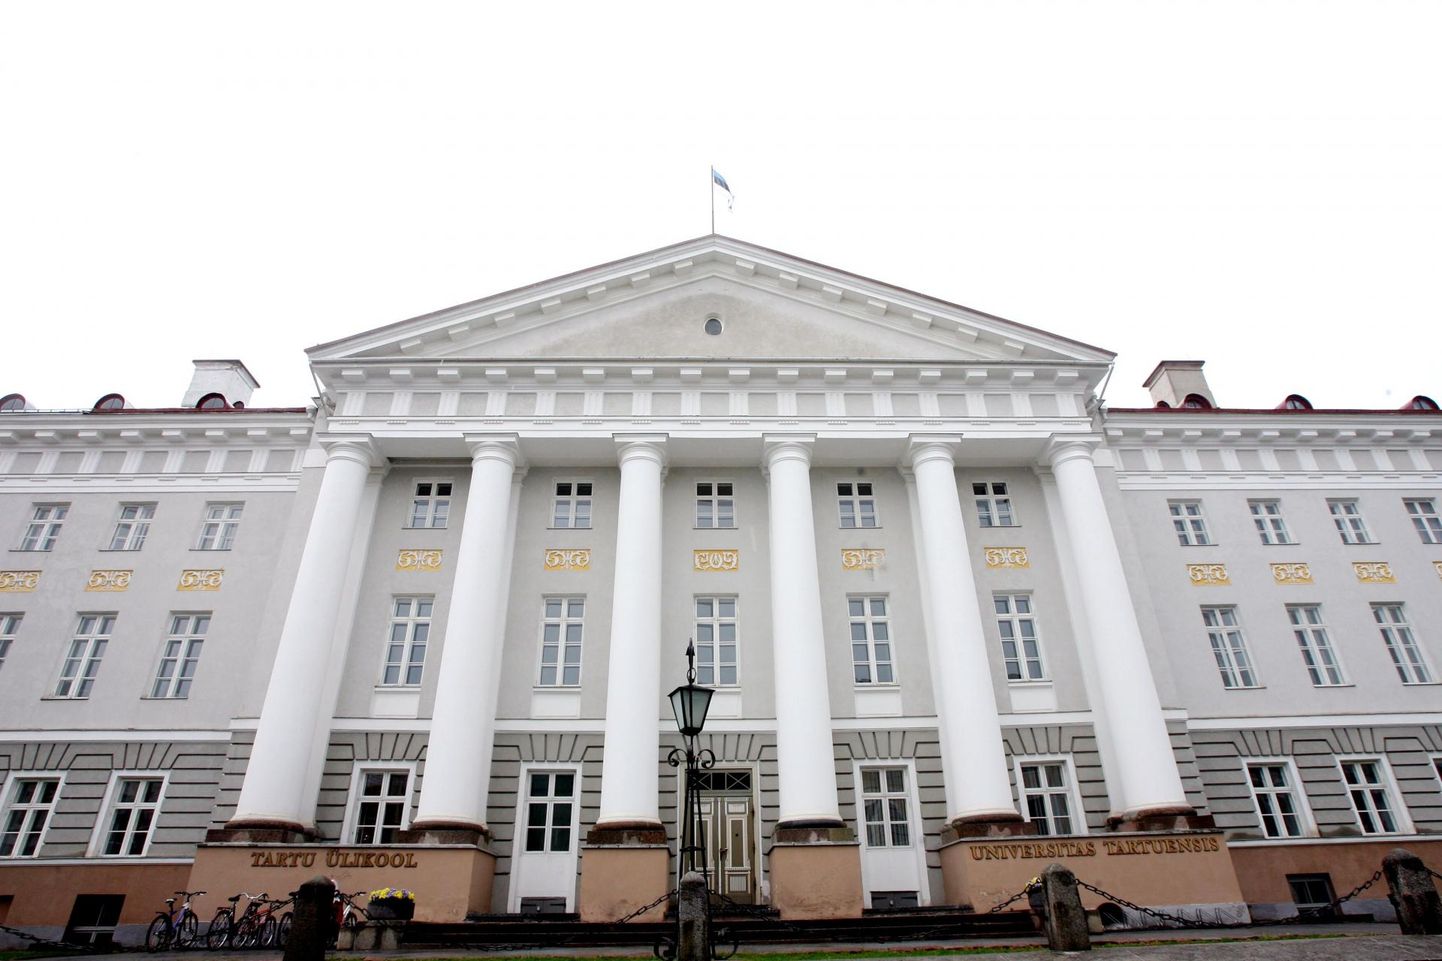 Enim avaldusi esitati Tartu ülikooli erialadele.